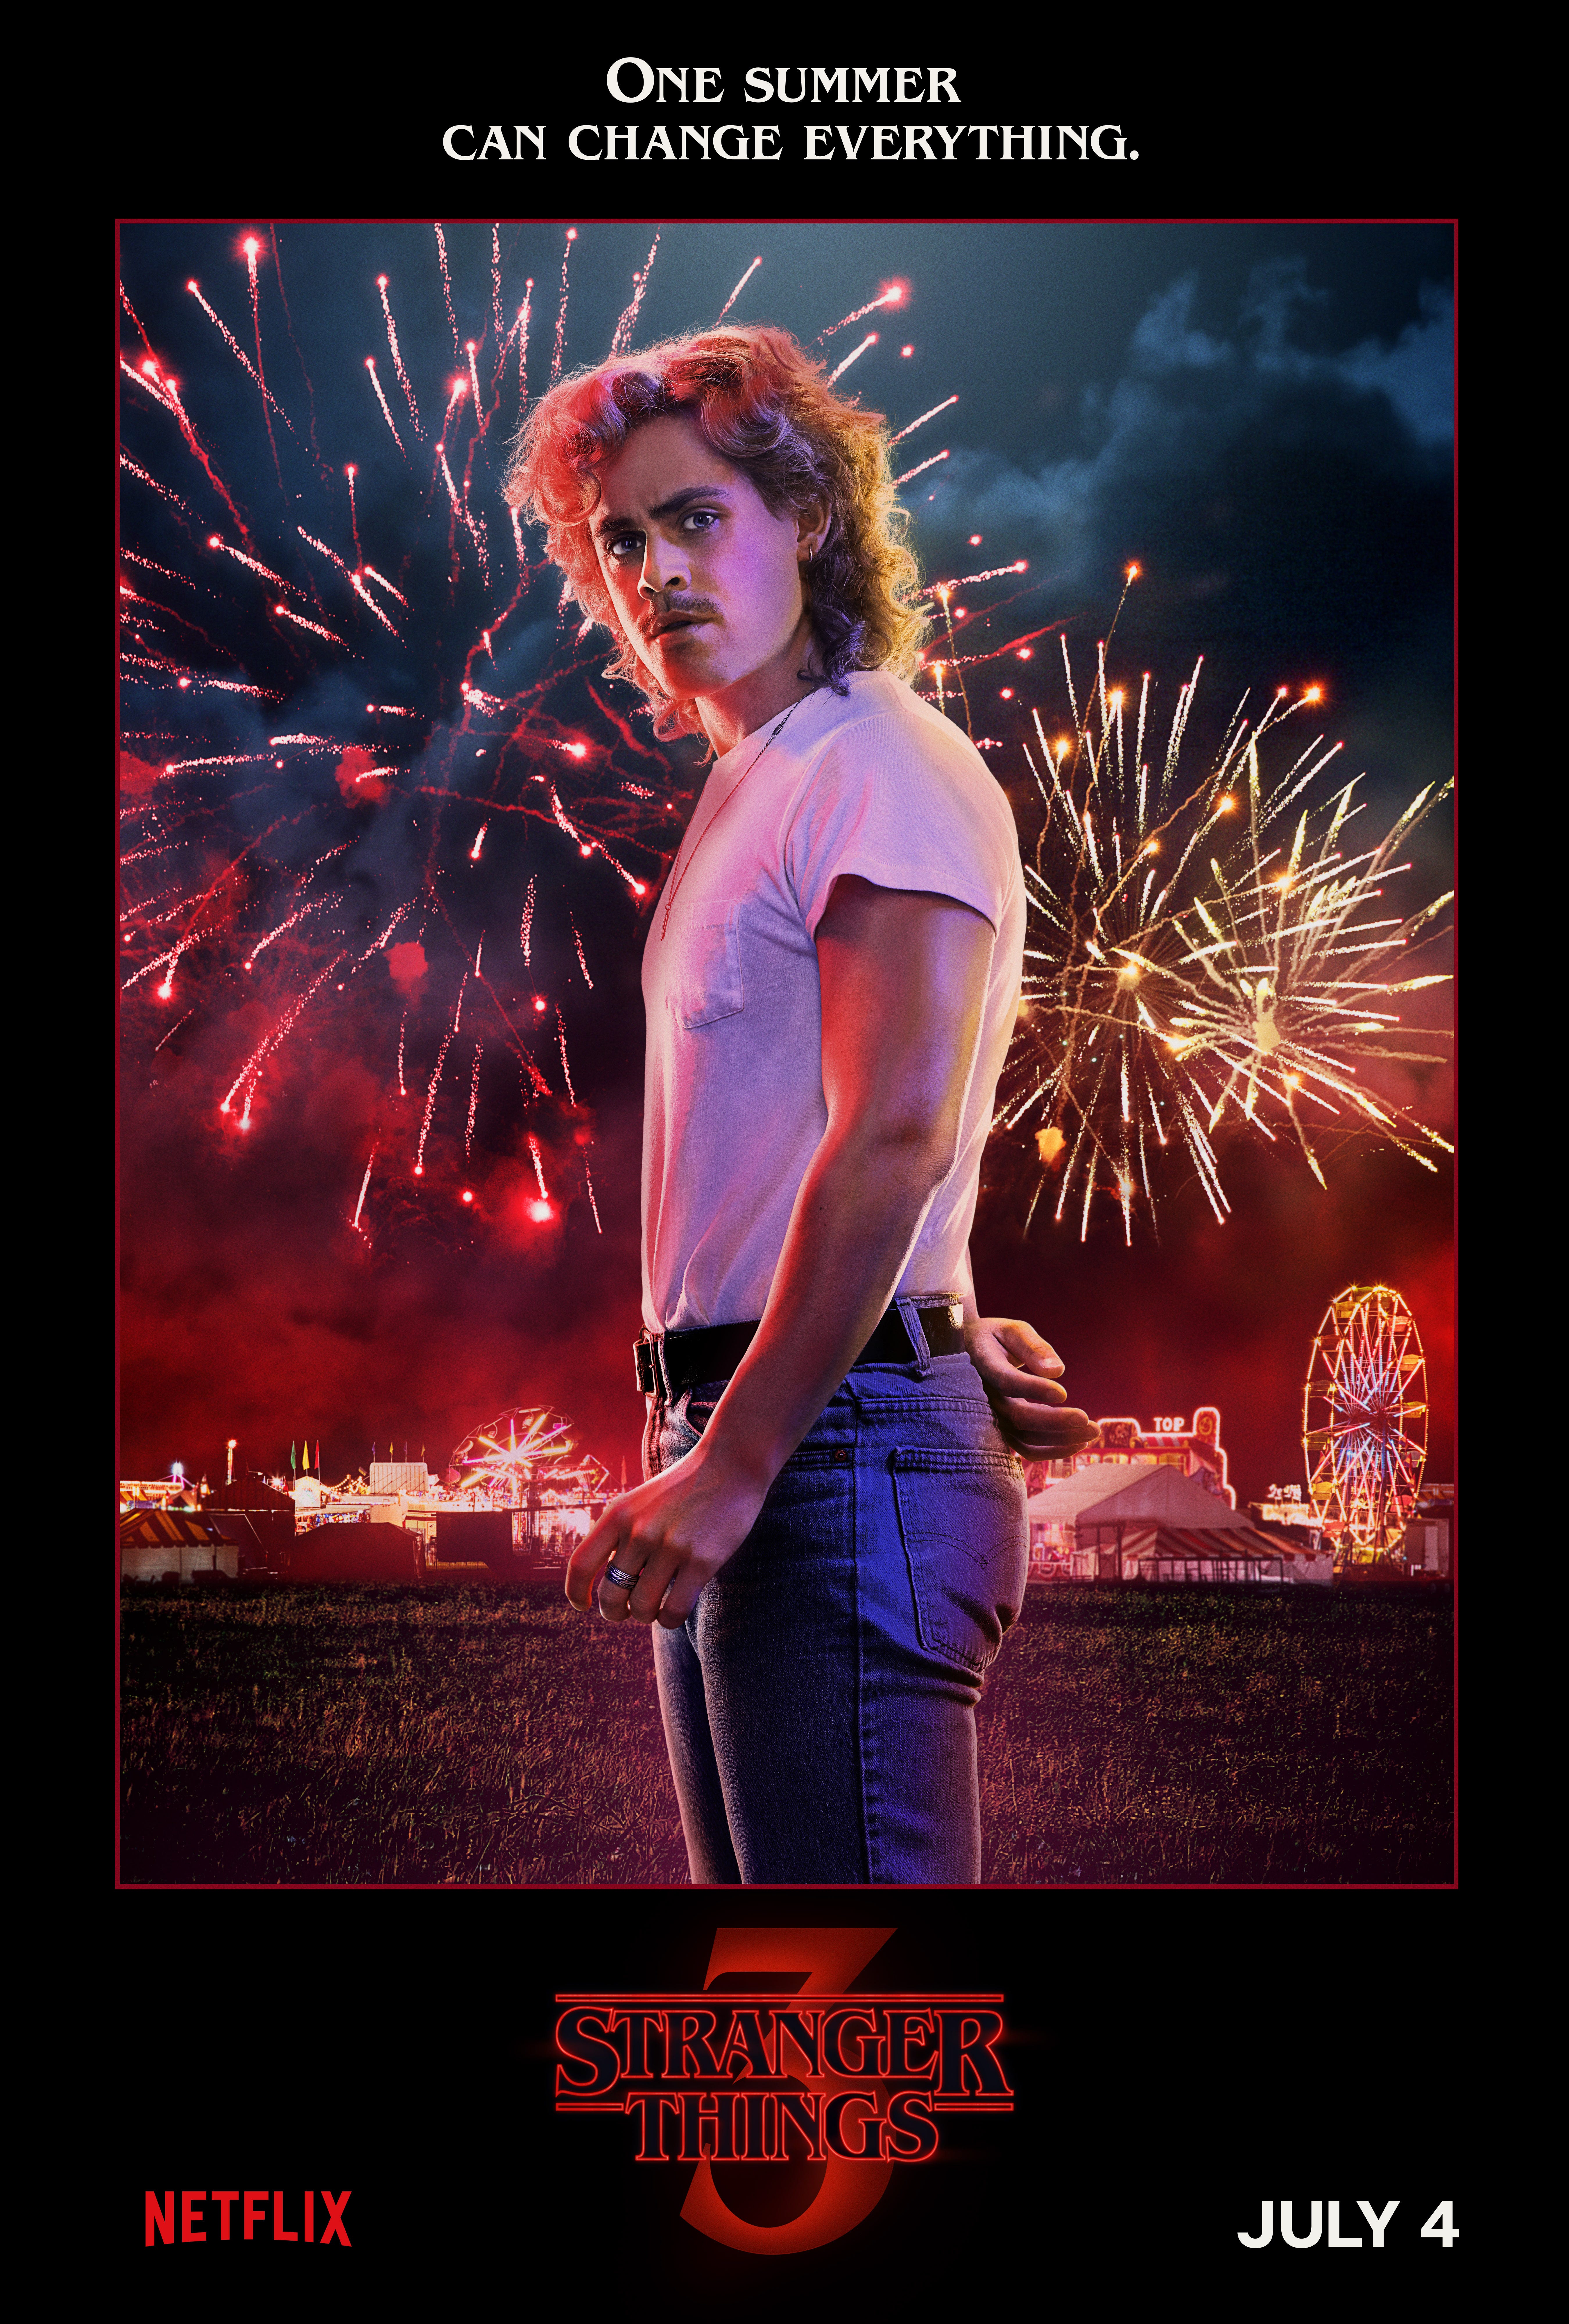 Natalia Dyer Stranger Things Fireworks Poster Wallpapers